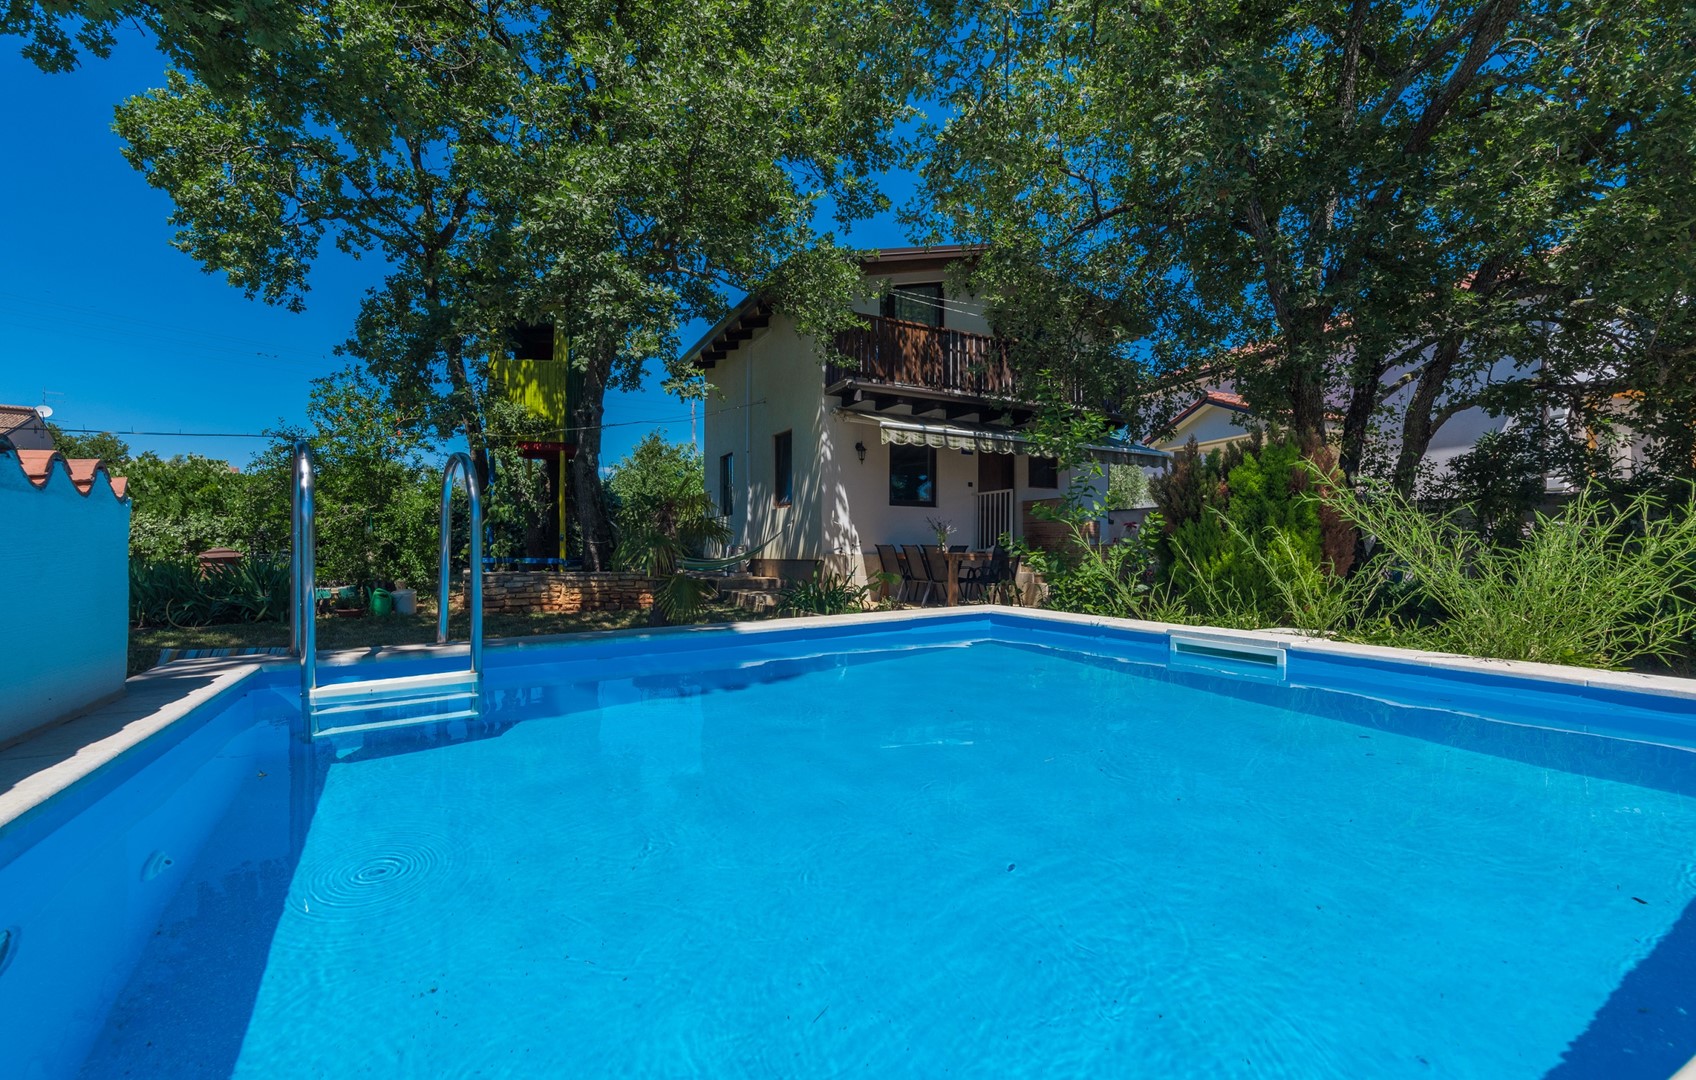 Casa Ajla mit privatem Pool und eingezäuntem   in Kroatien